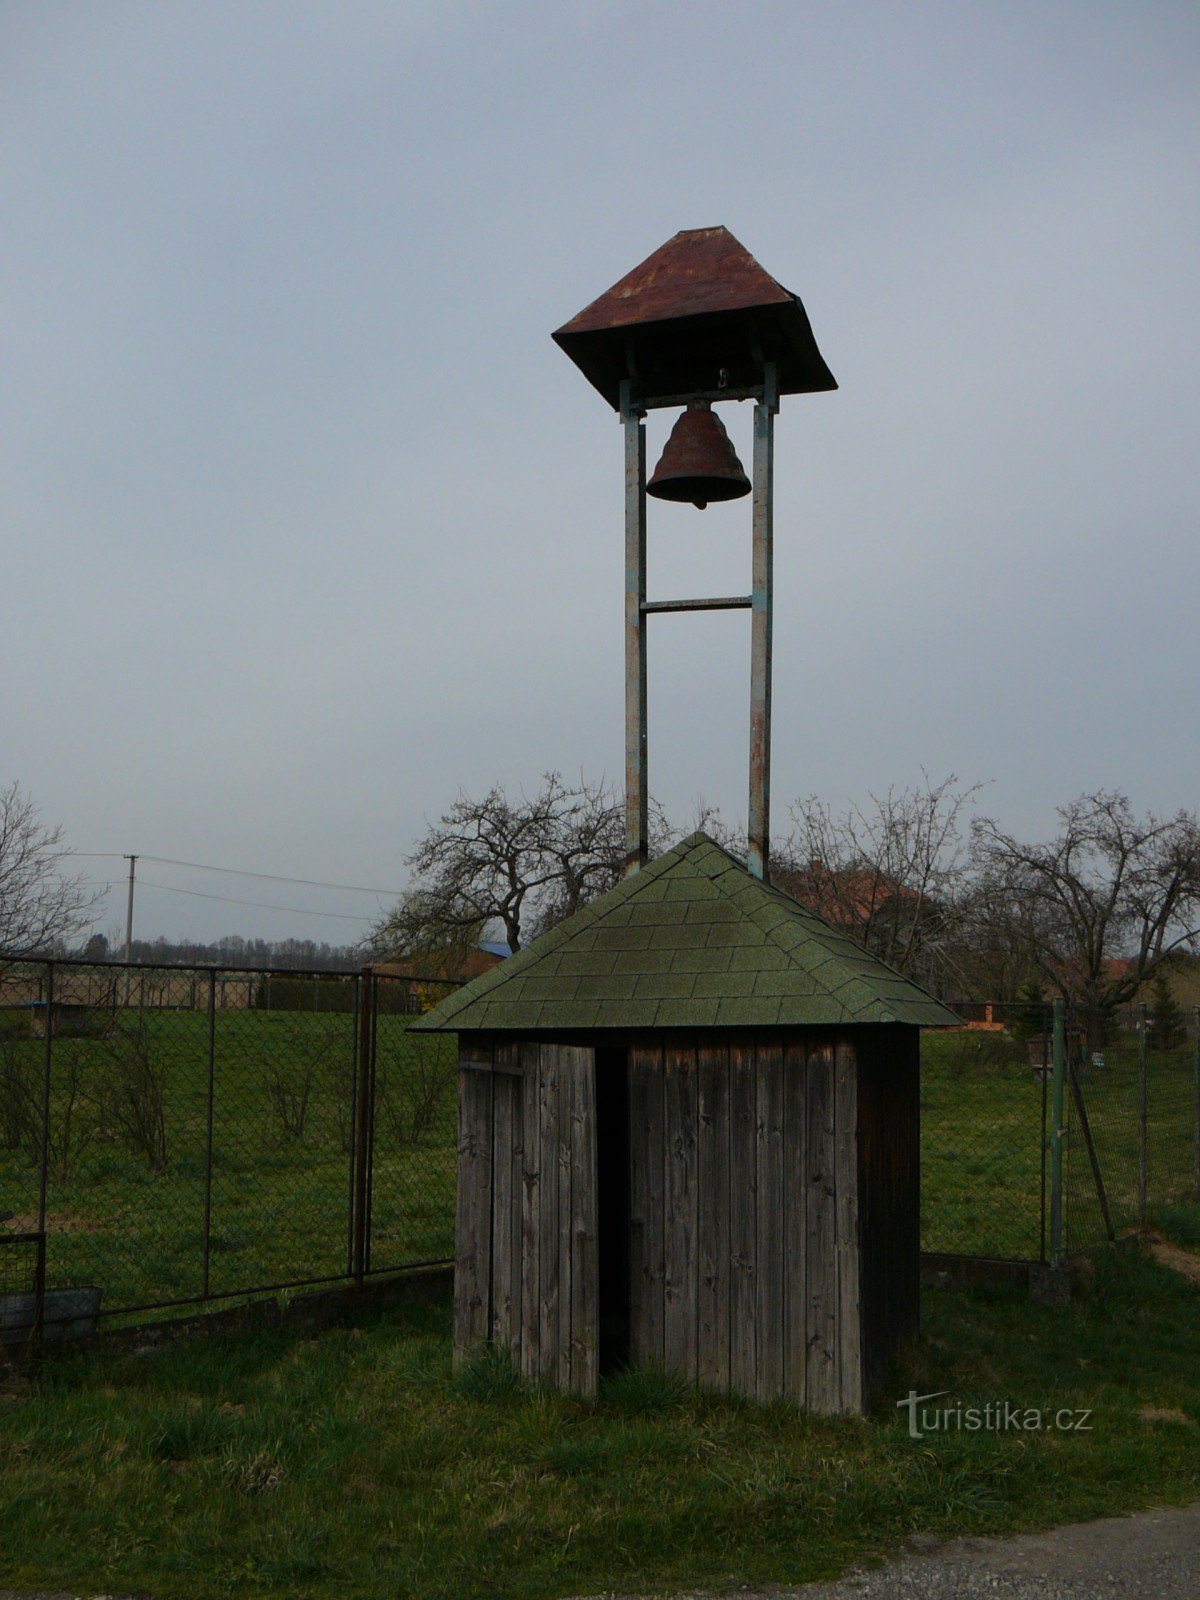 tháp chuông ở Lučina